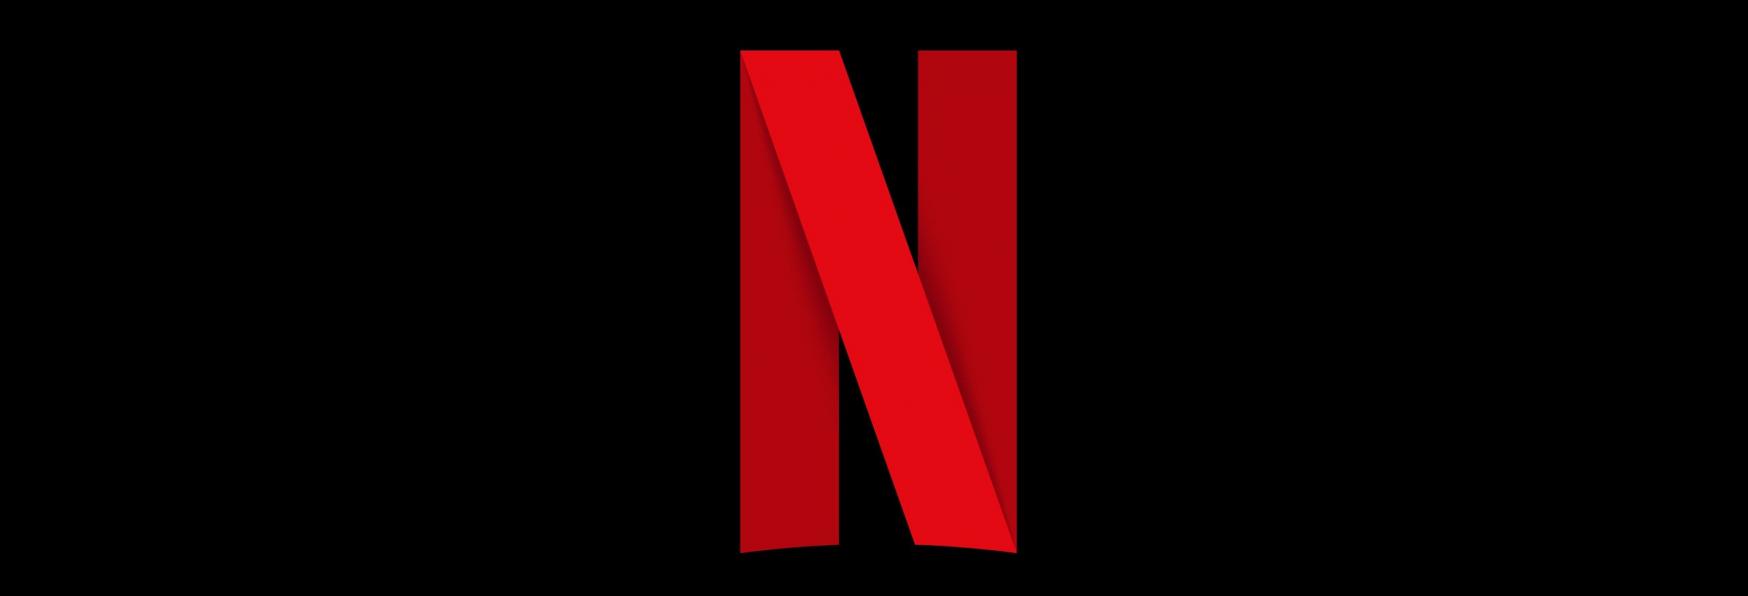 Netflix annuncia che la Top 10 si espanderà presto diventando Top 50